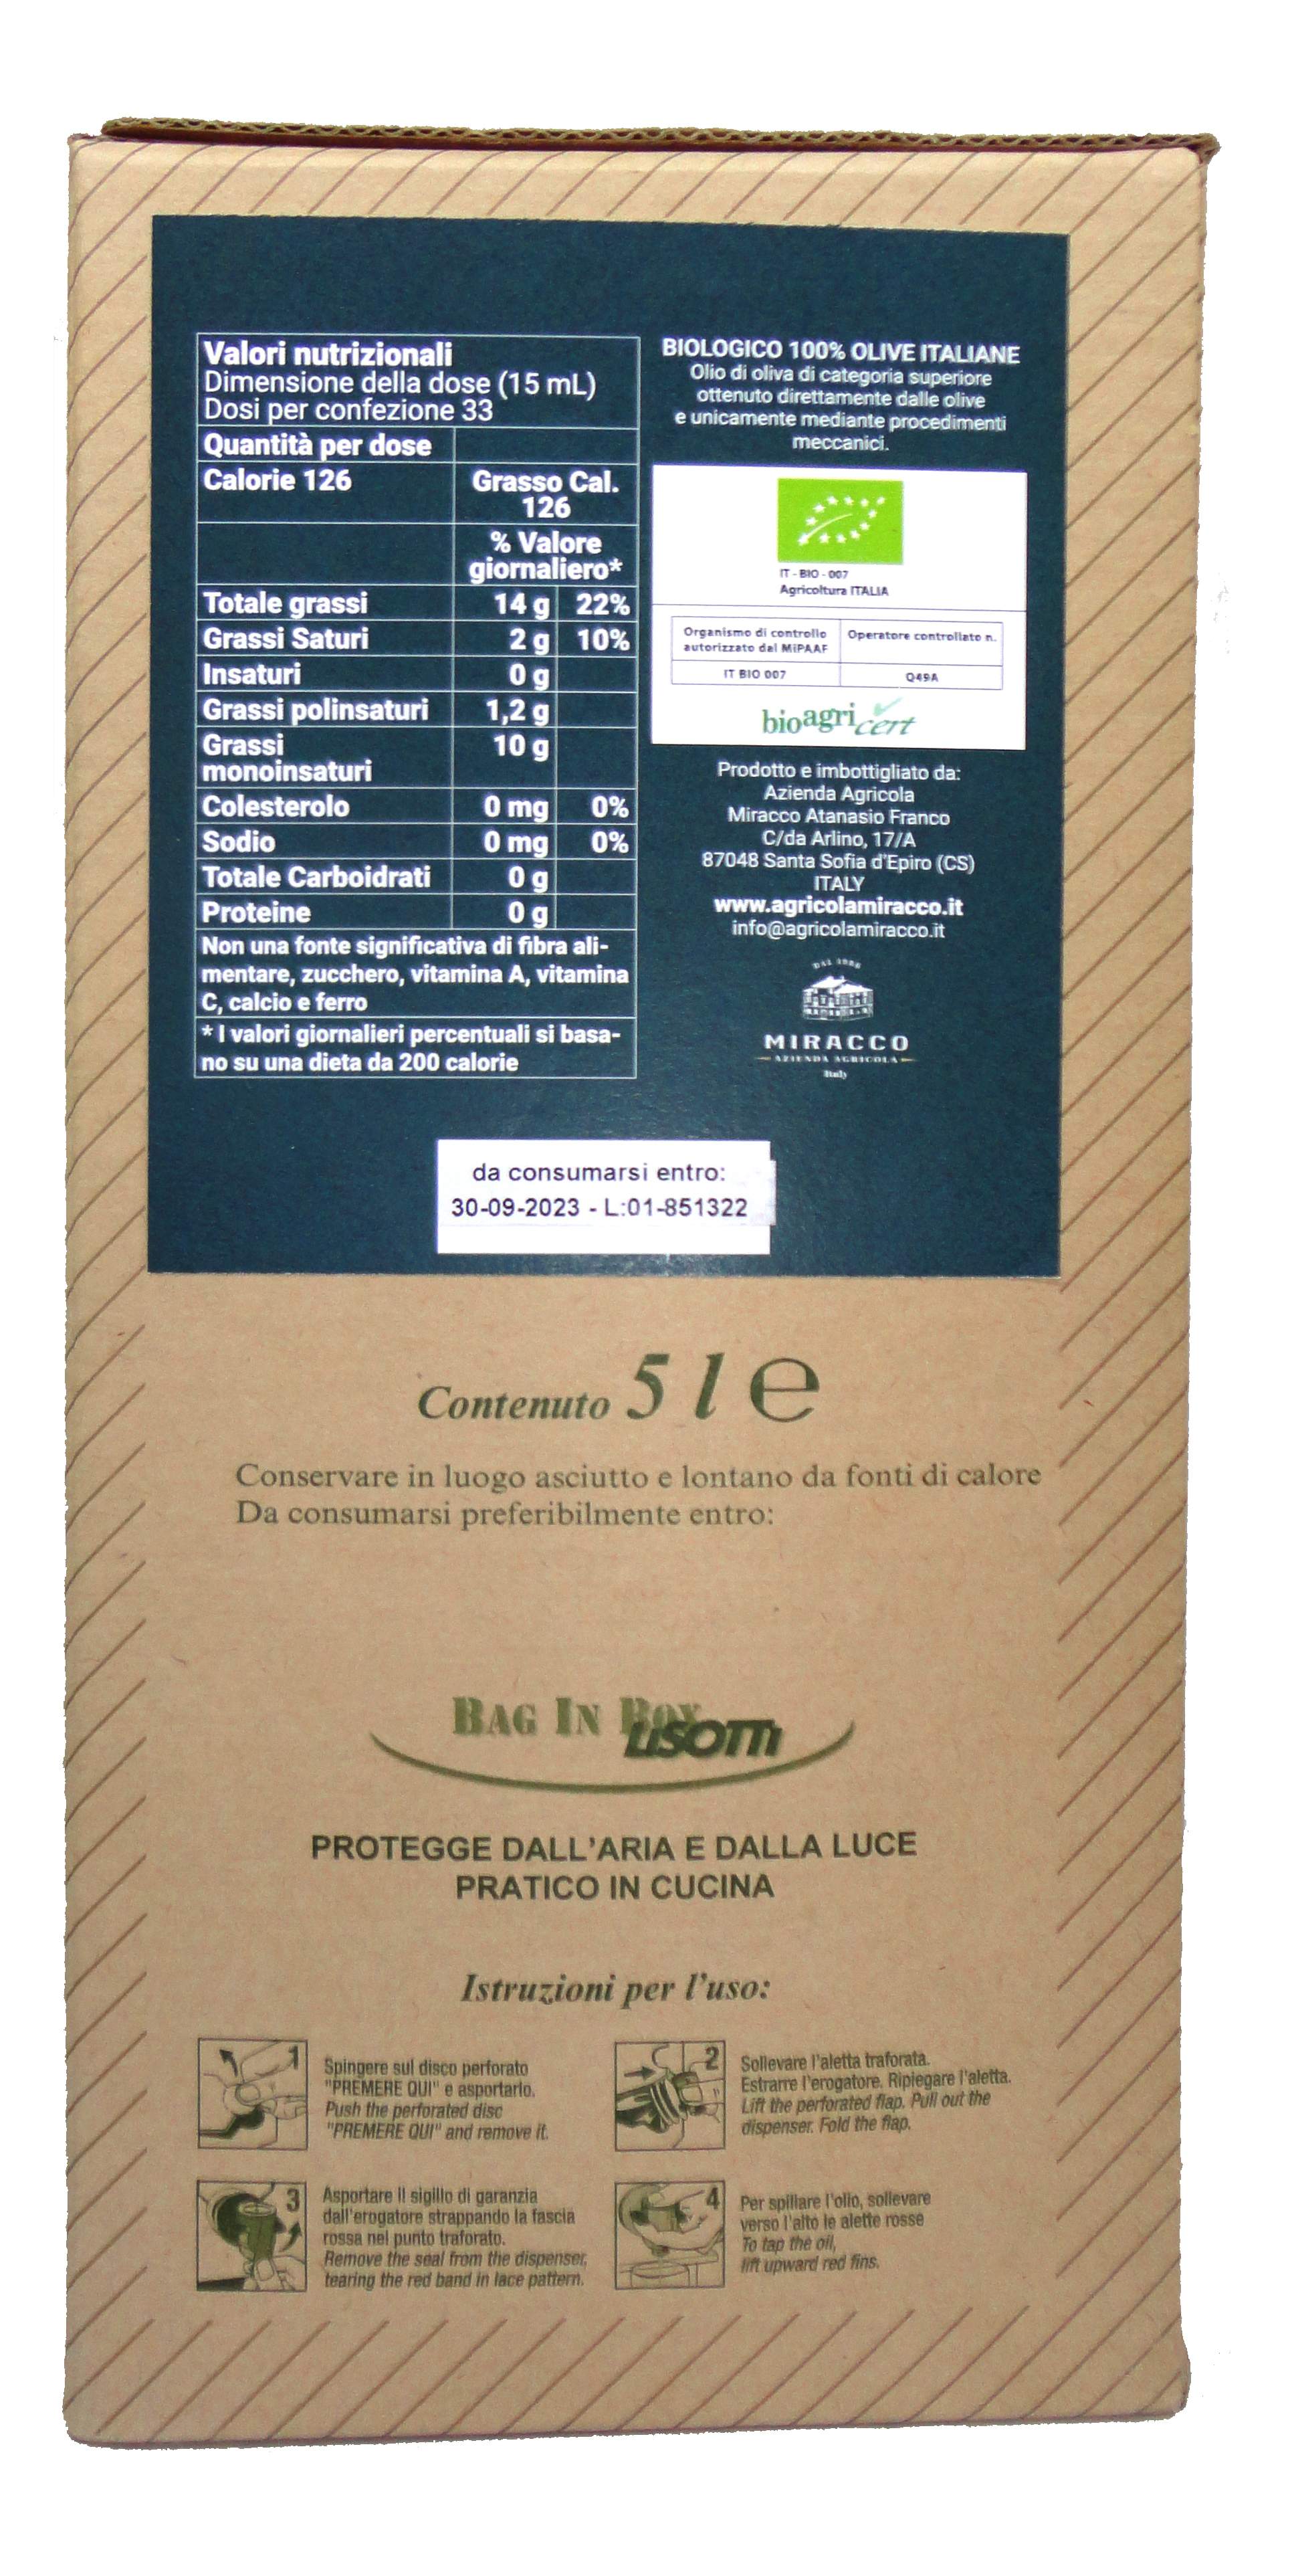 Bag in Box "I Fiscoli" 5 Lt. Olio Extravergine di Oliva Biologico 100% Italiano